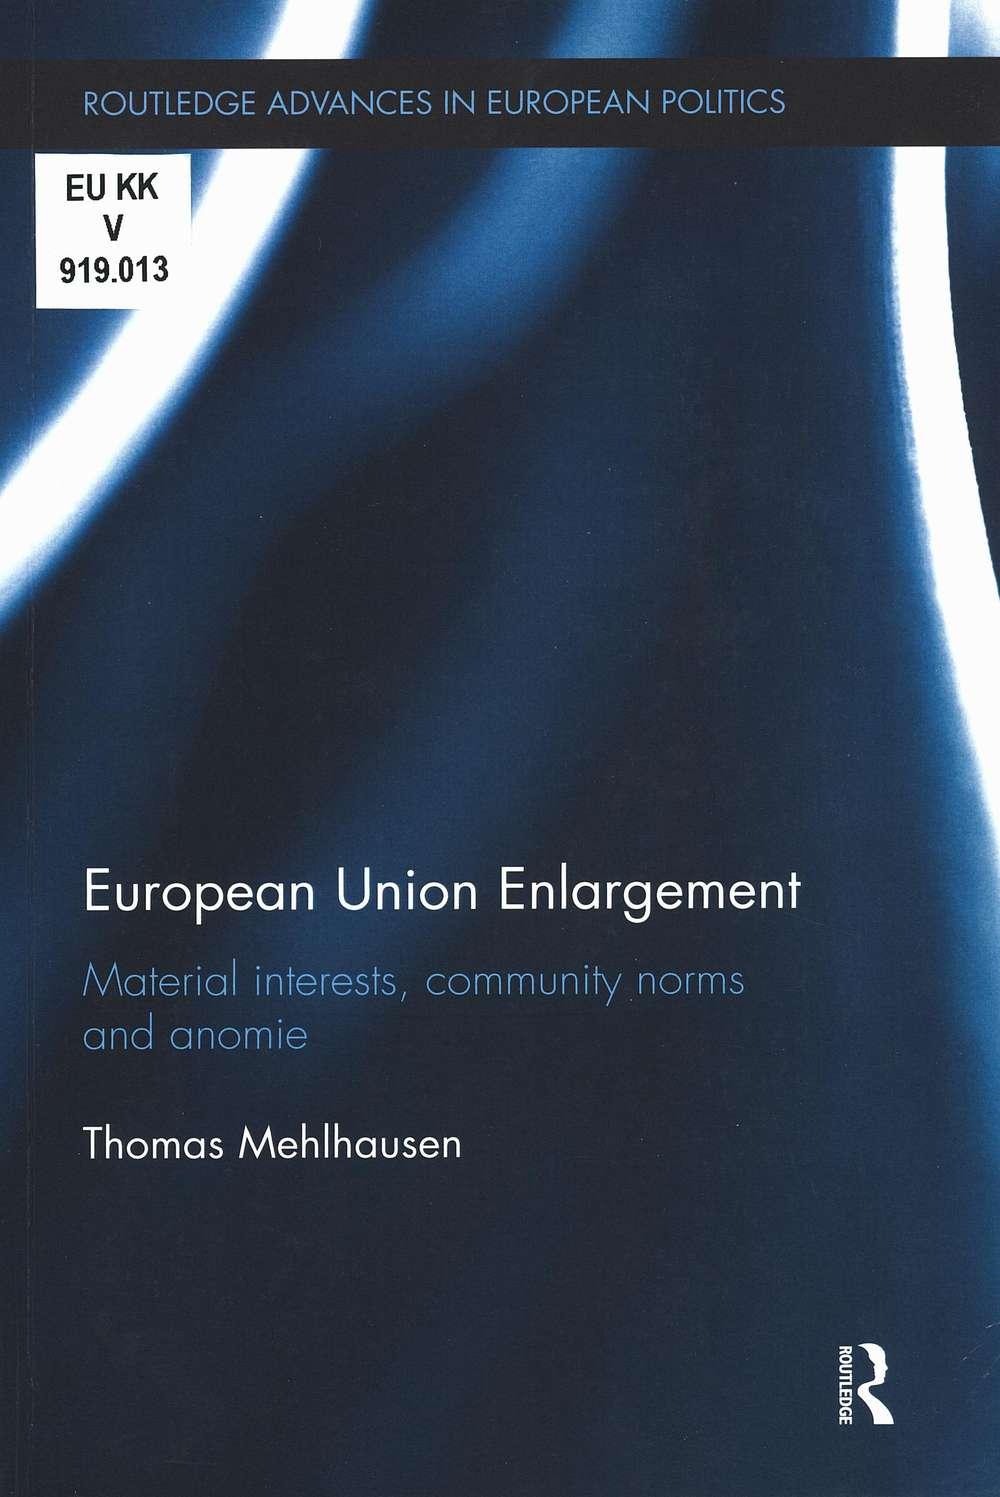 EU enlargement